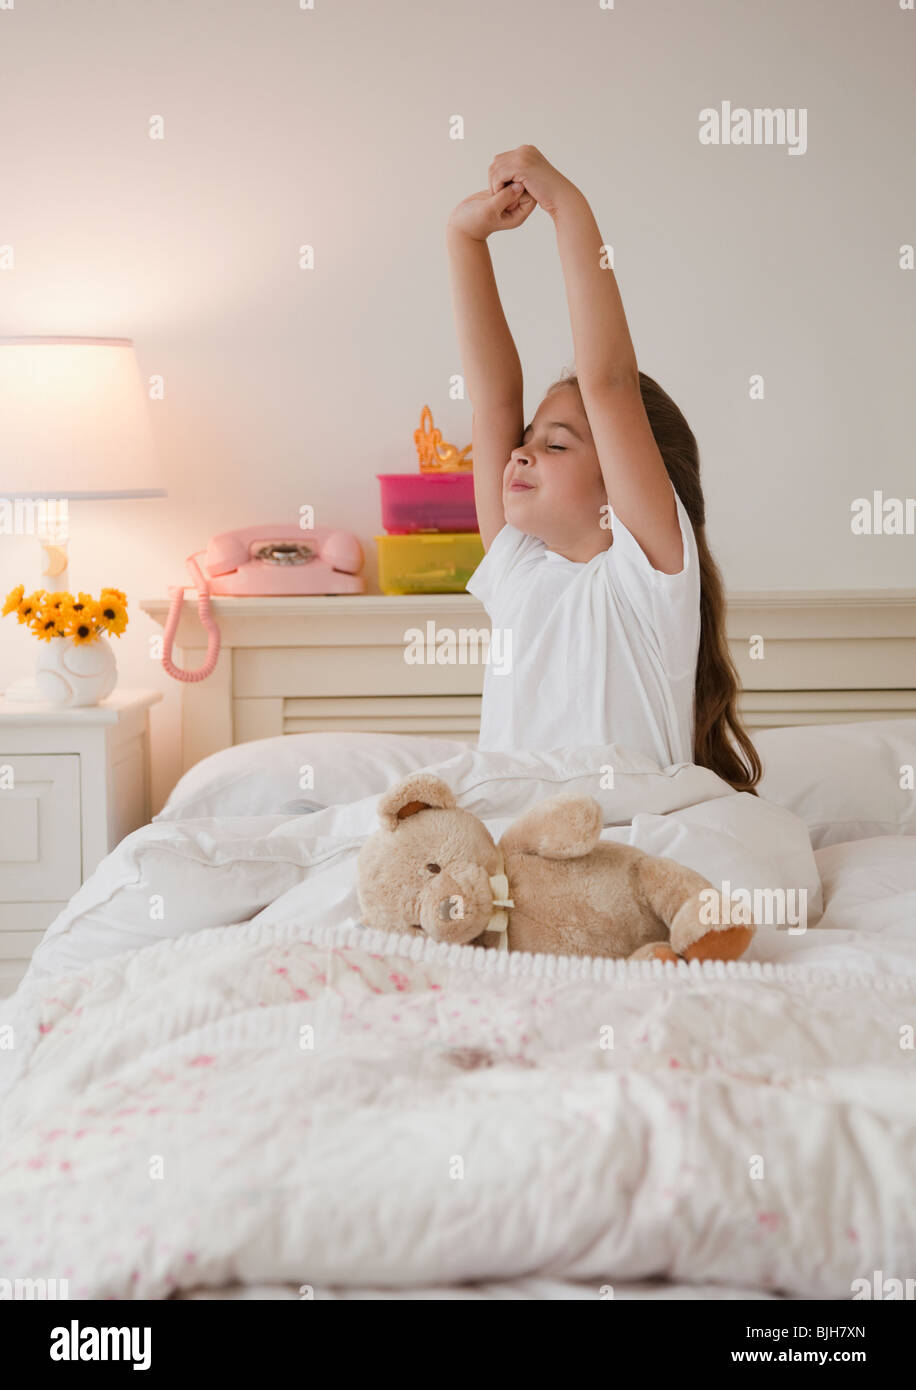 Jeune fille s'étend dans le lit Photo Stock - Alamy